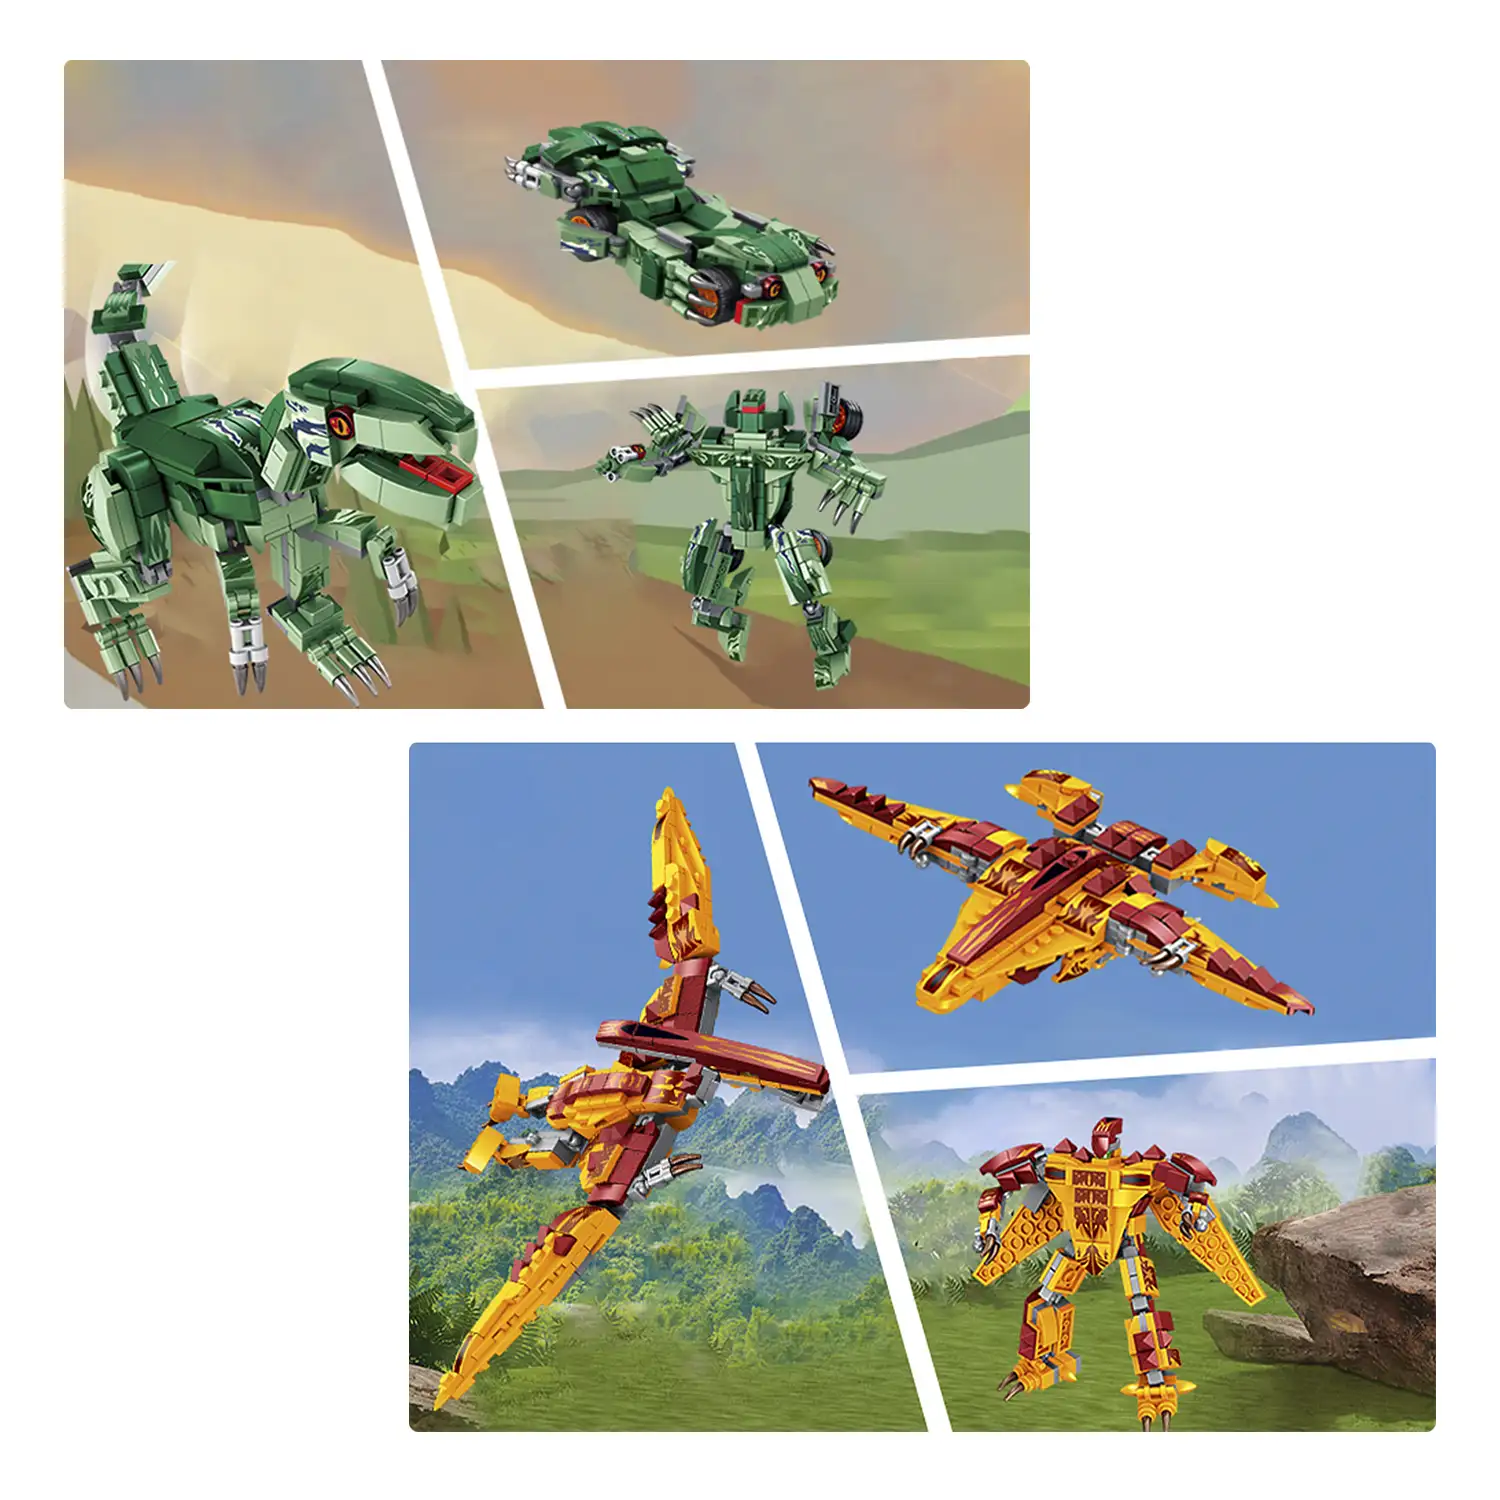 Pack de 4 Dinosaurios. Cada dinosaurio convertible en 3 formas (dinosaurio + robot + vehículo) 979 piezas.